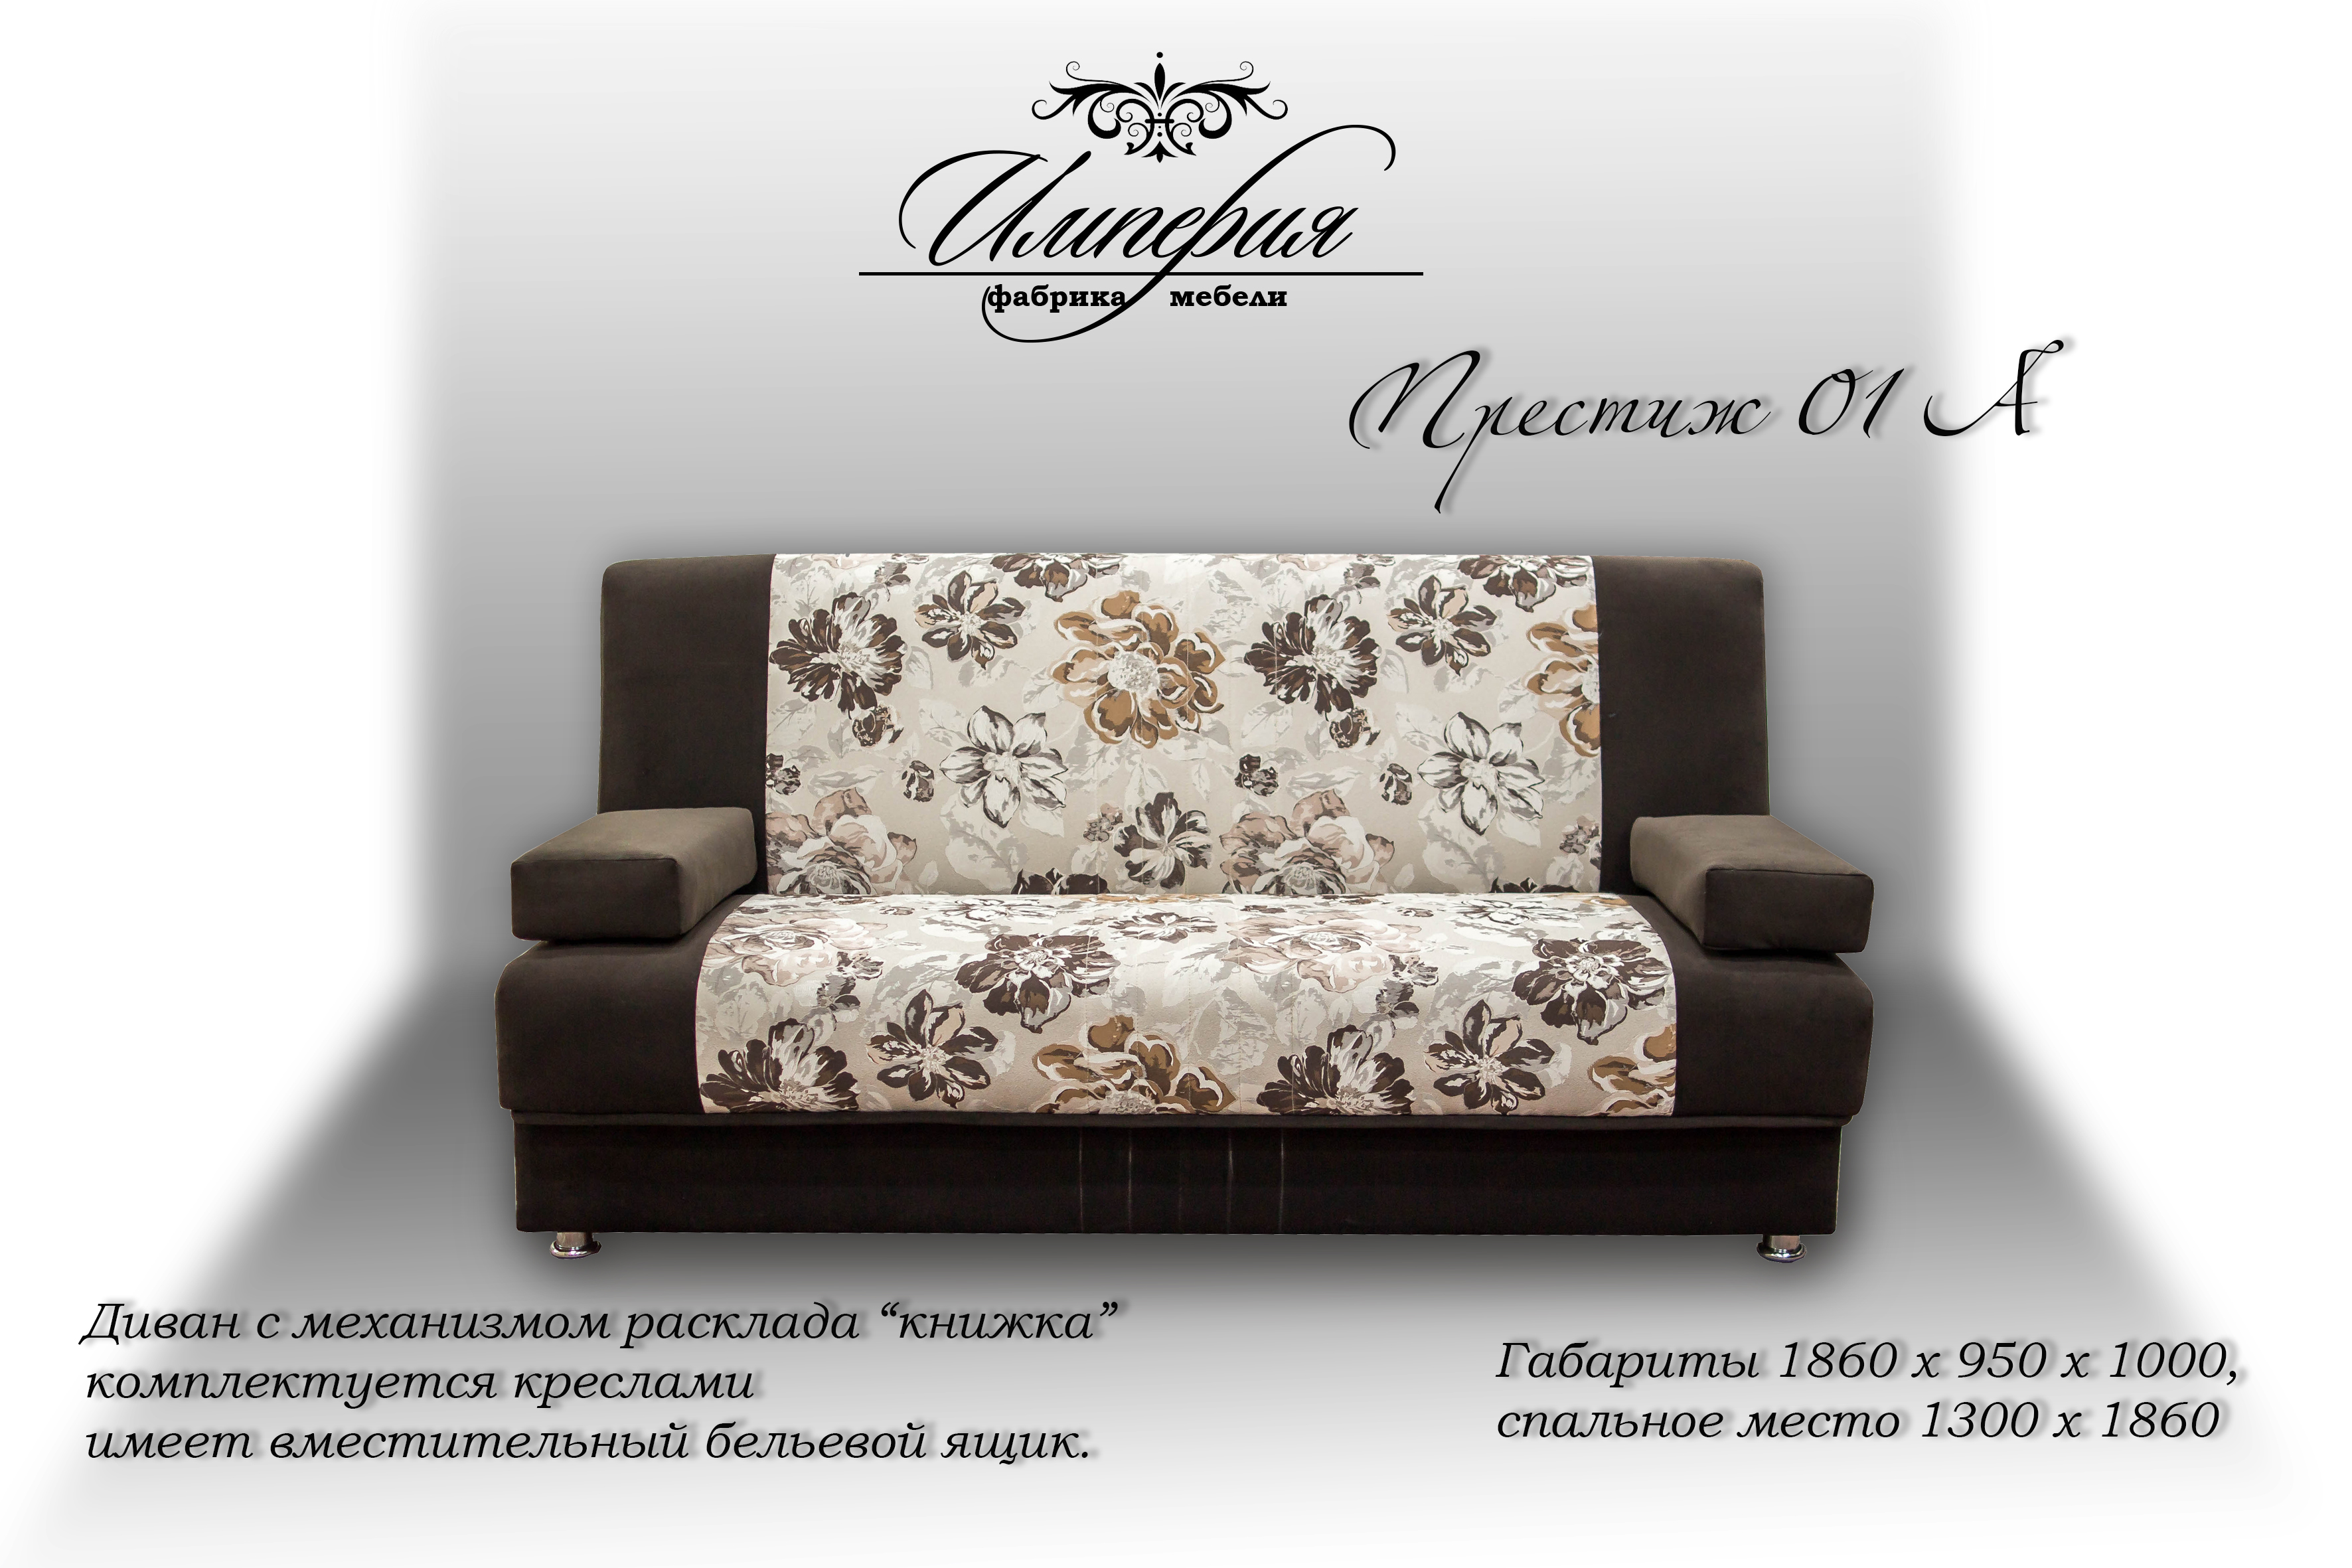 угловой диван престиж ульяновской фабрики